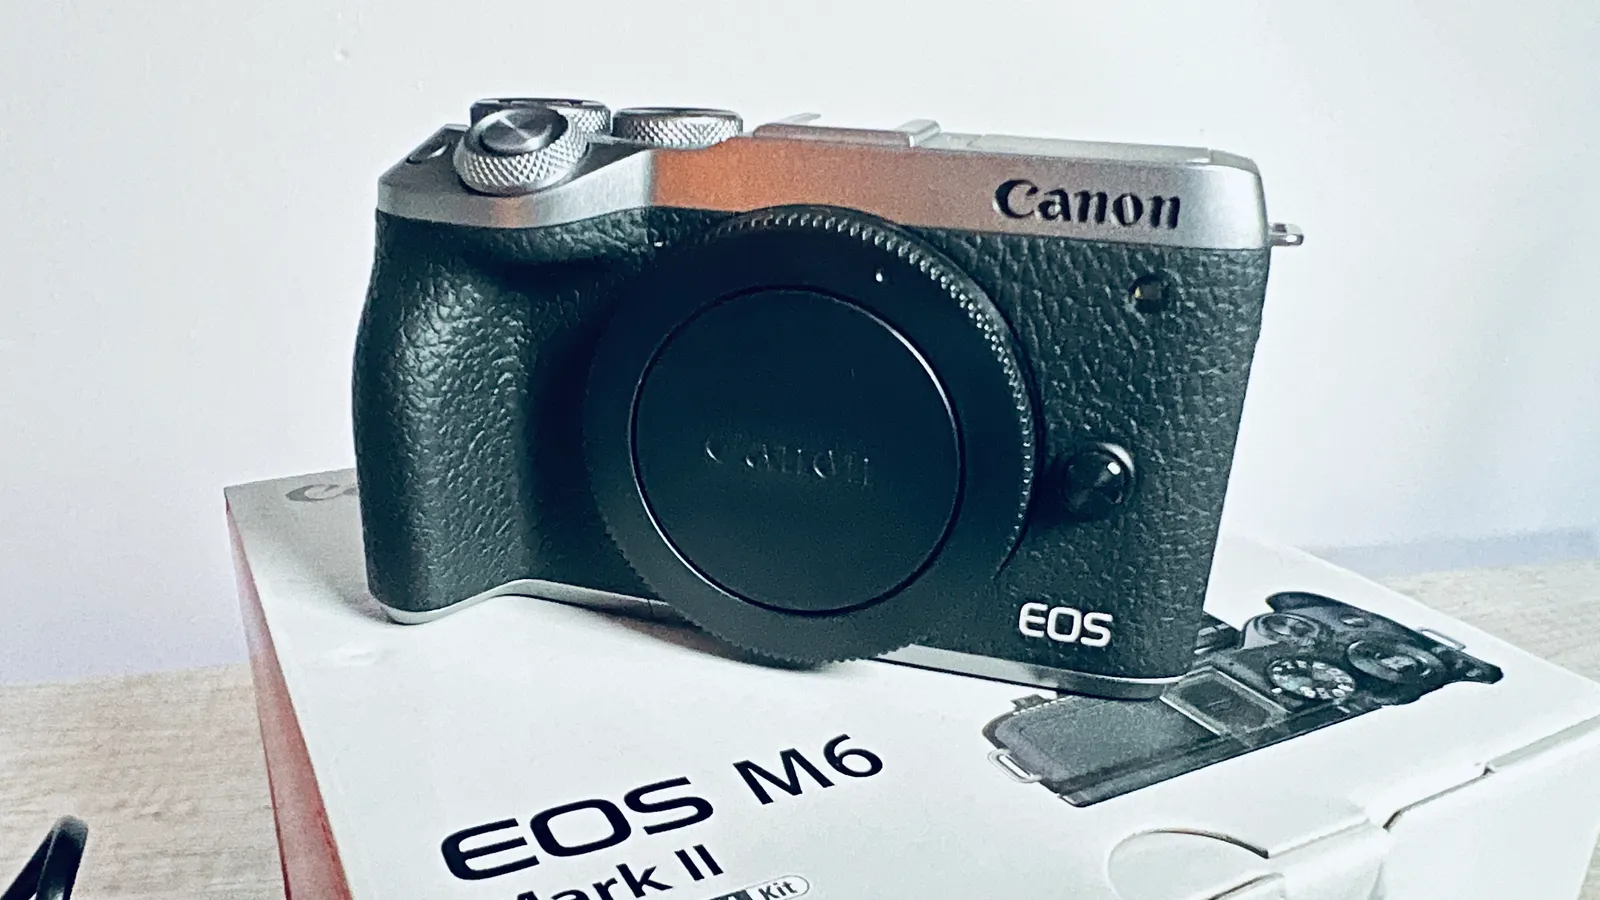 Canon EOS M6 Mark II Body (Silver) + Accessories